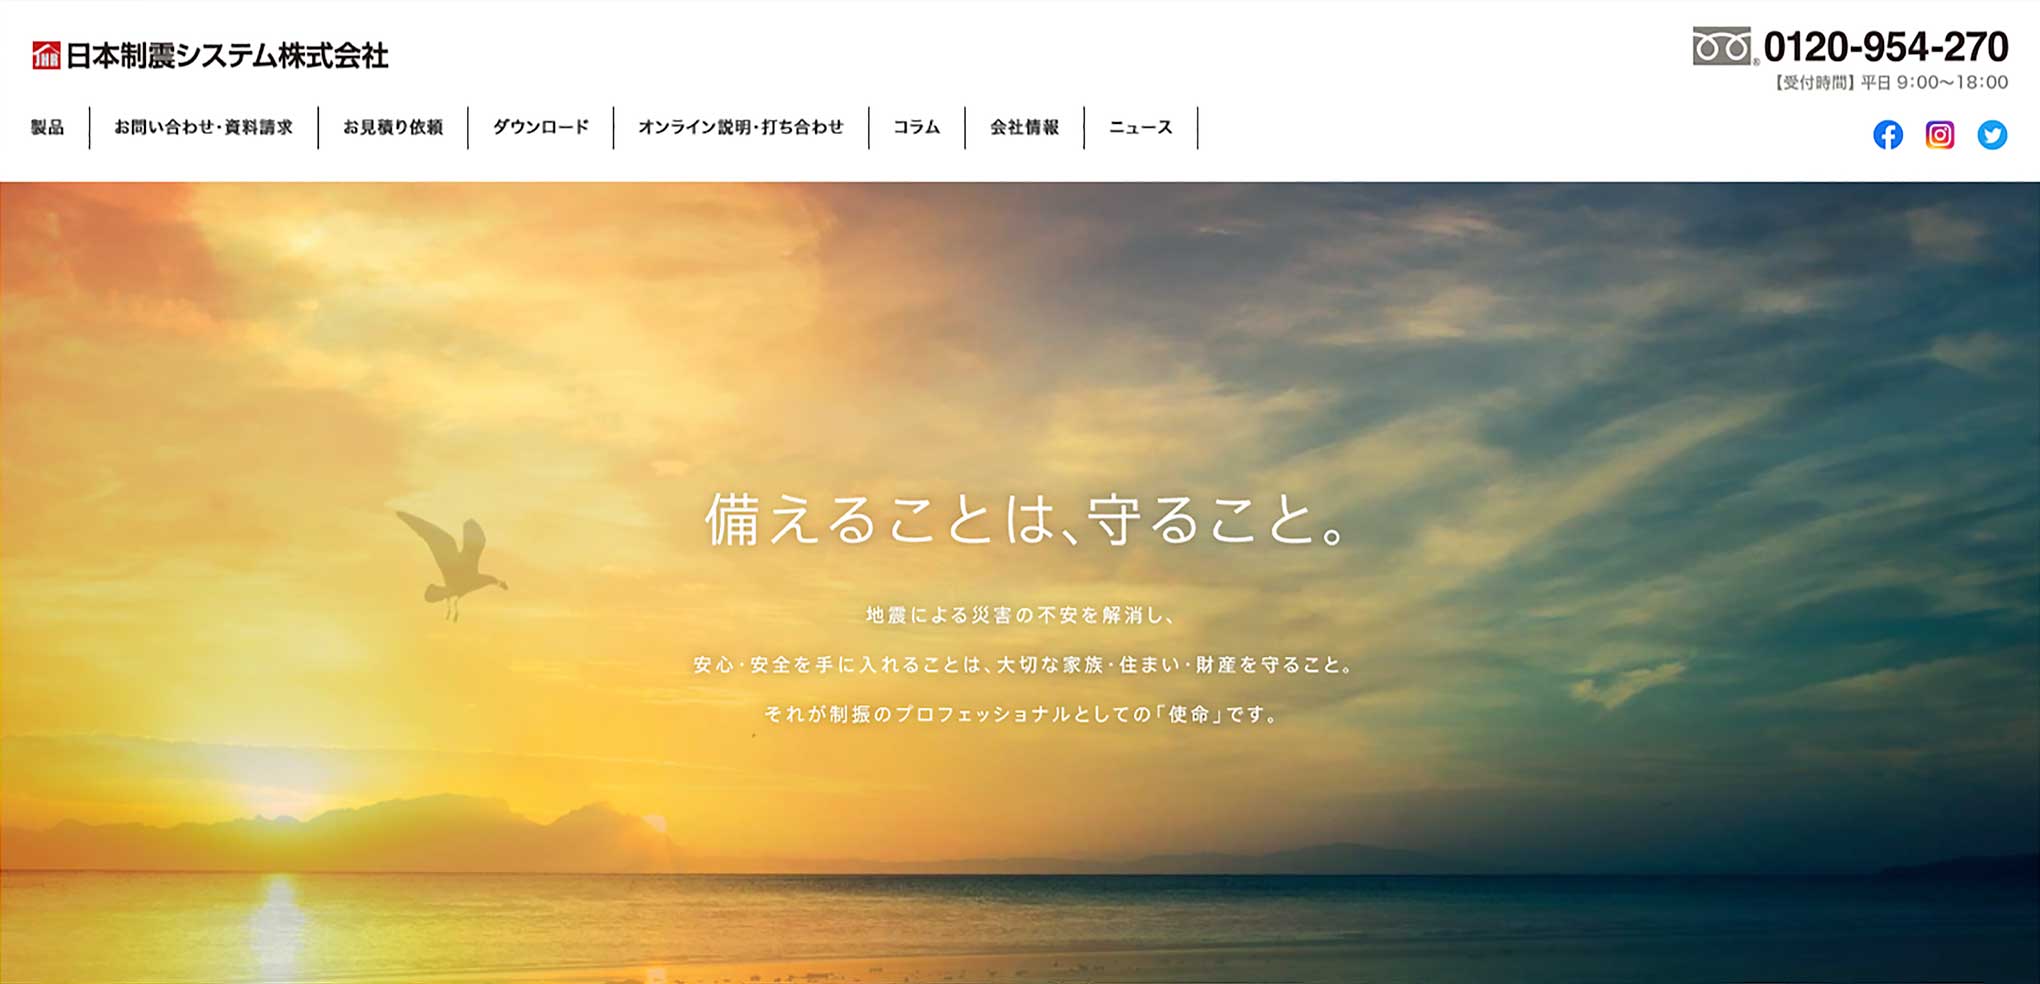 日本制震システム株式会社ホームページ